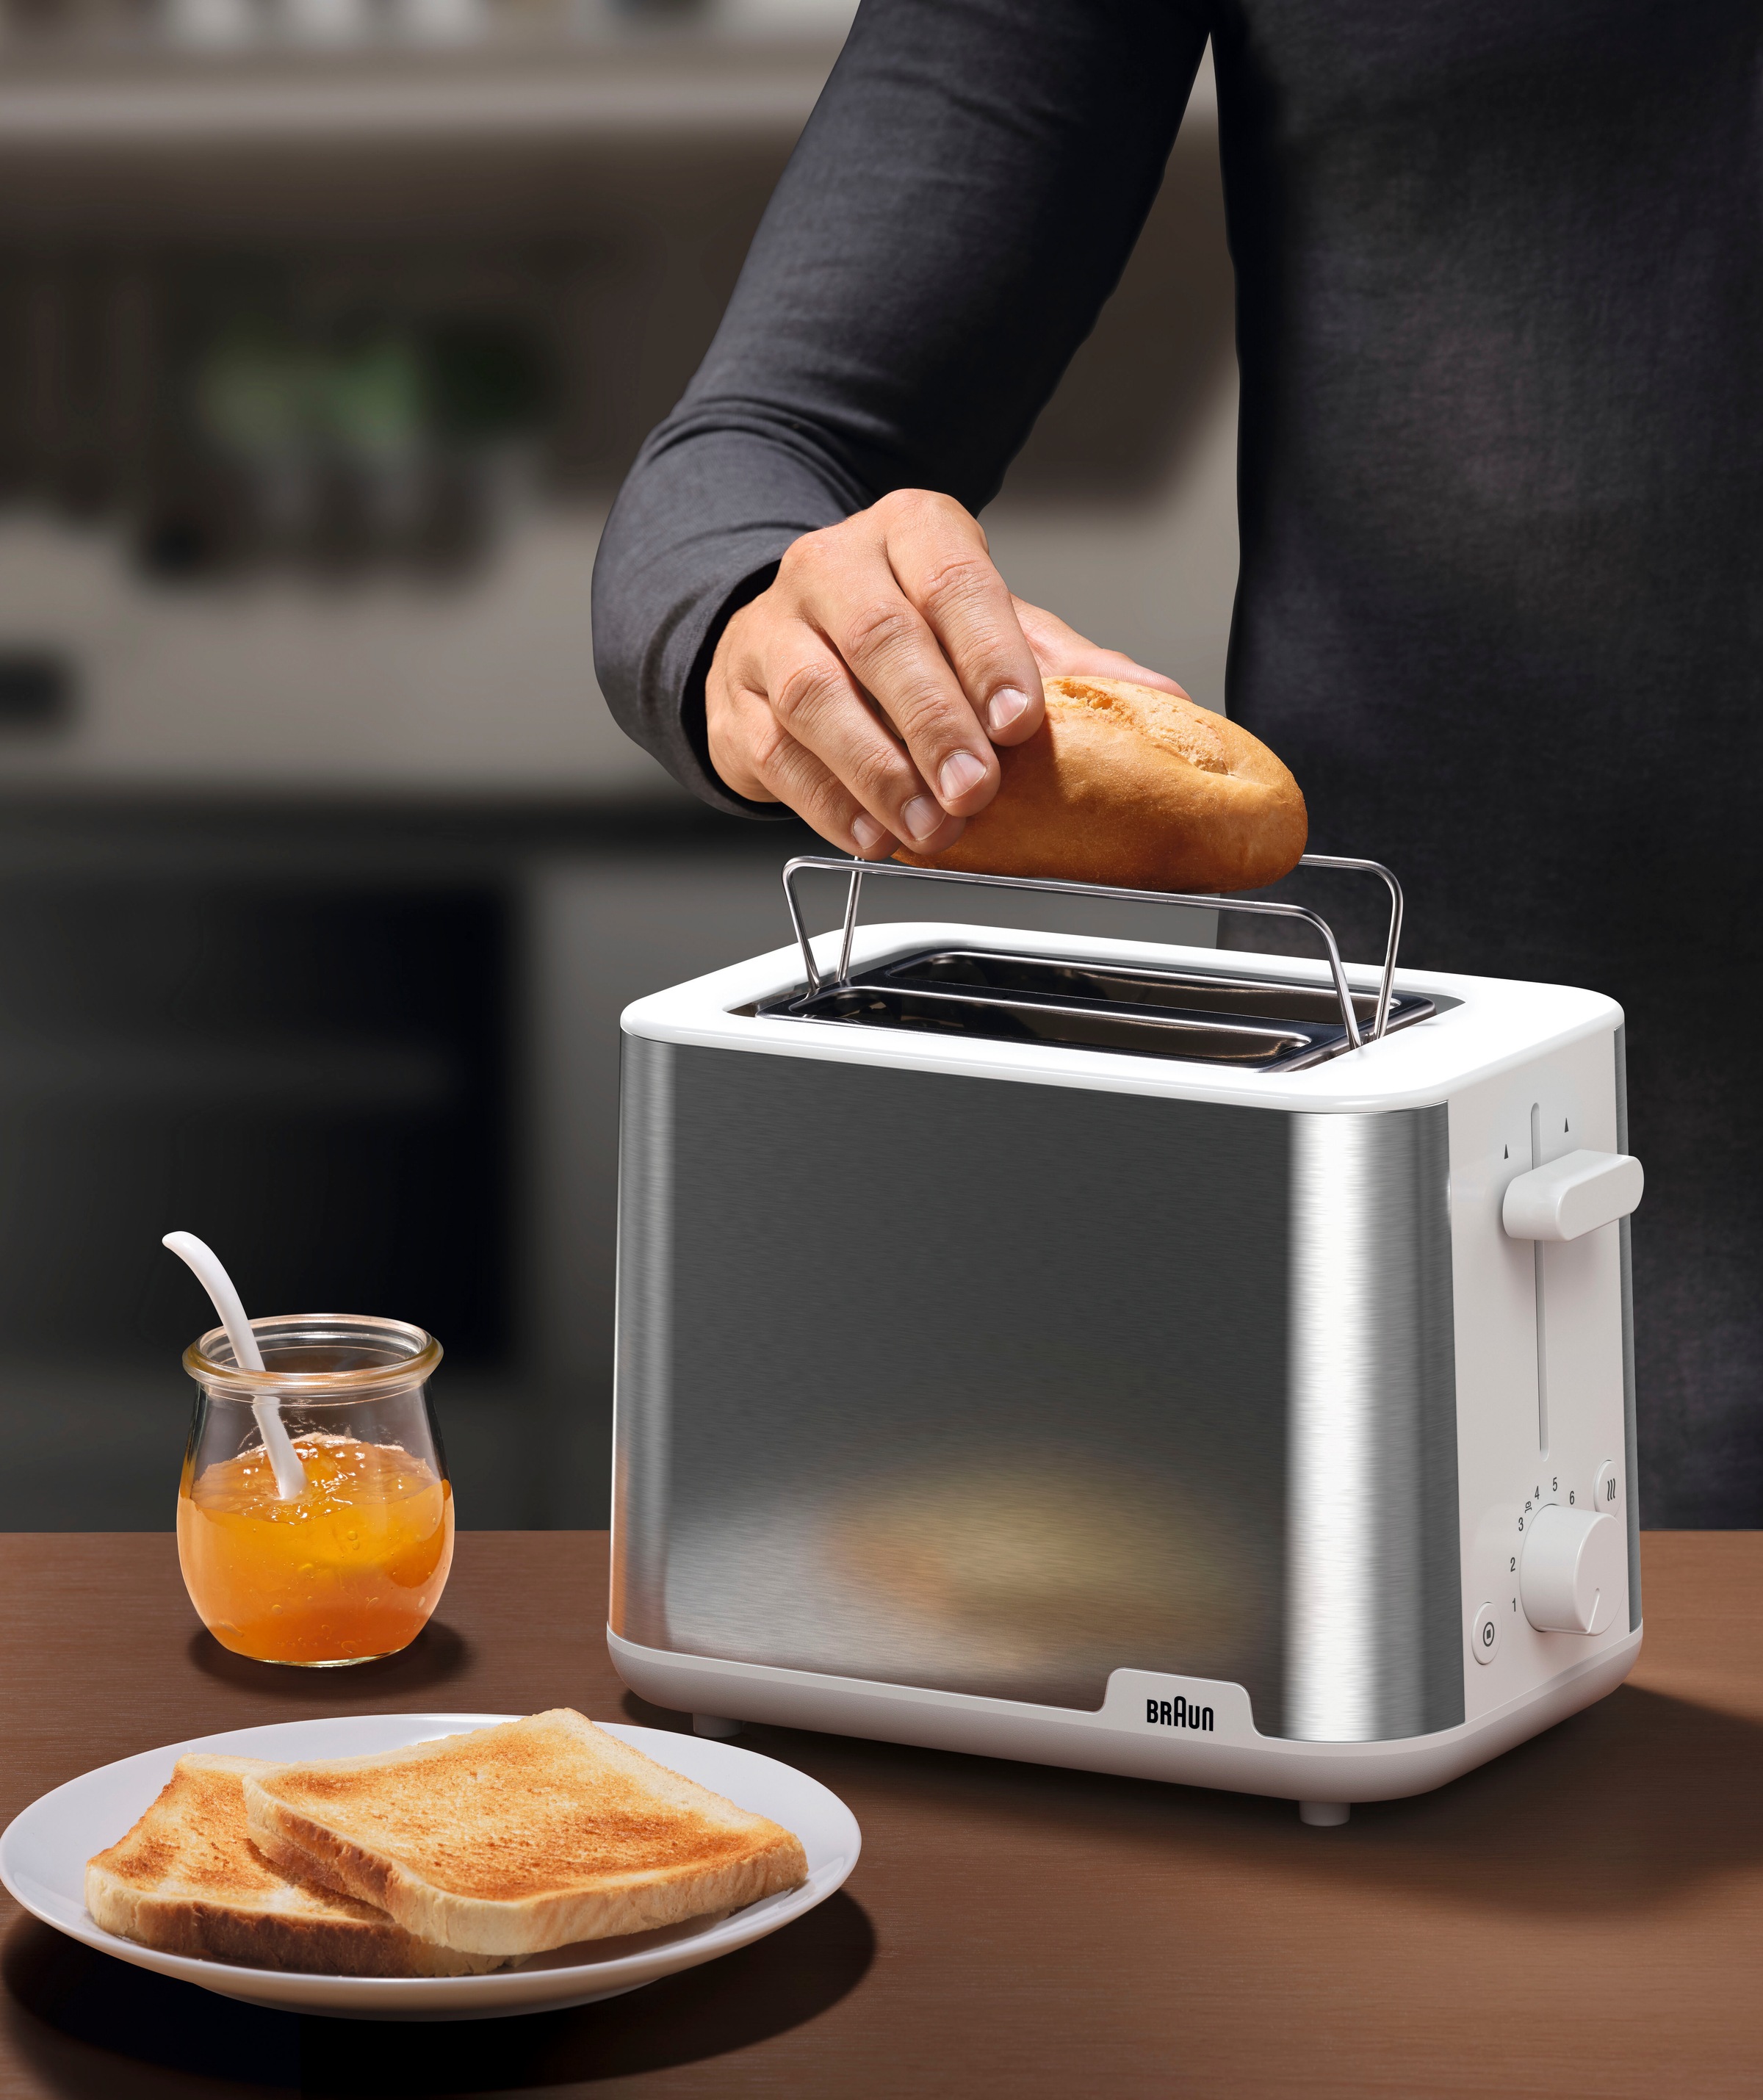 Braun Toaster »PurShine HT 1510 WH«, 2 kurze Schlitze, 900 W